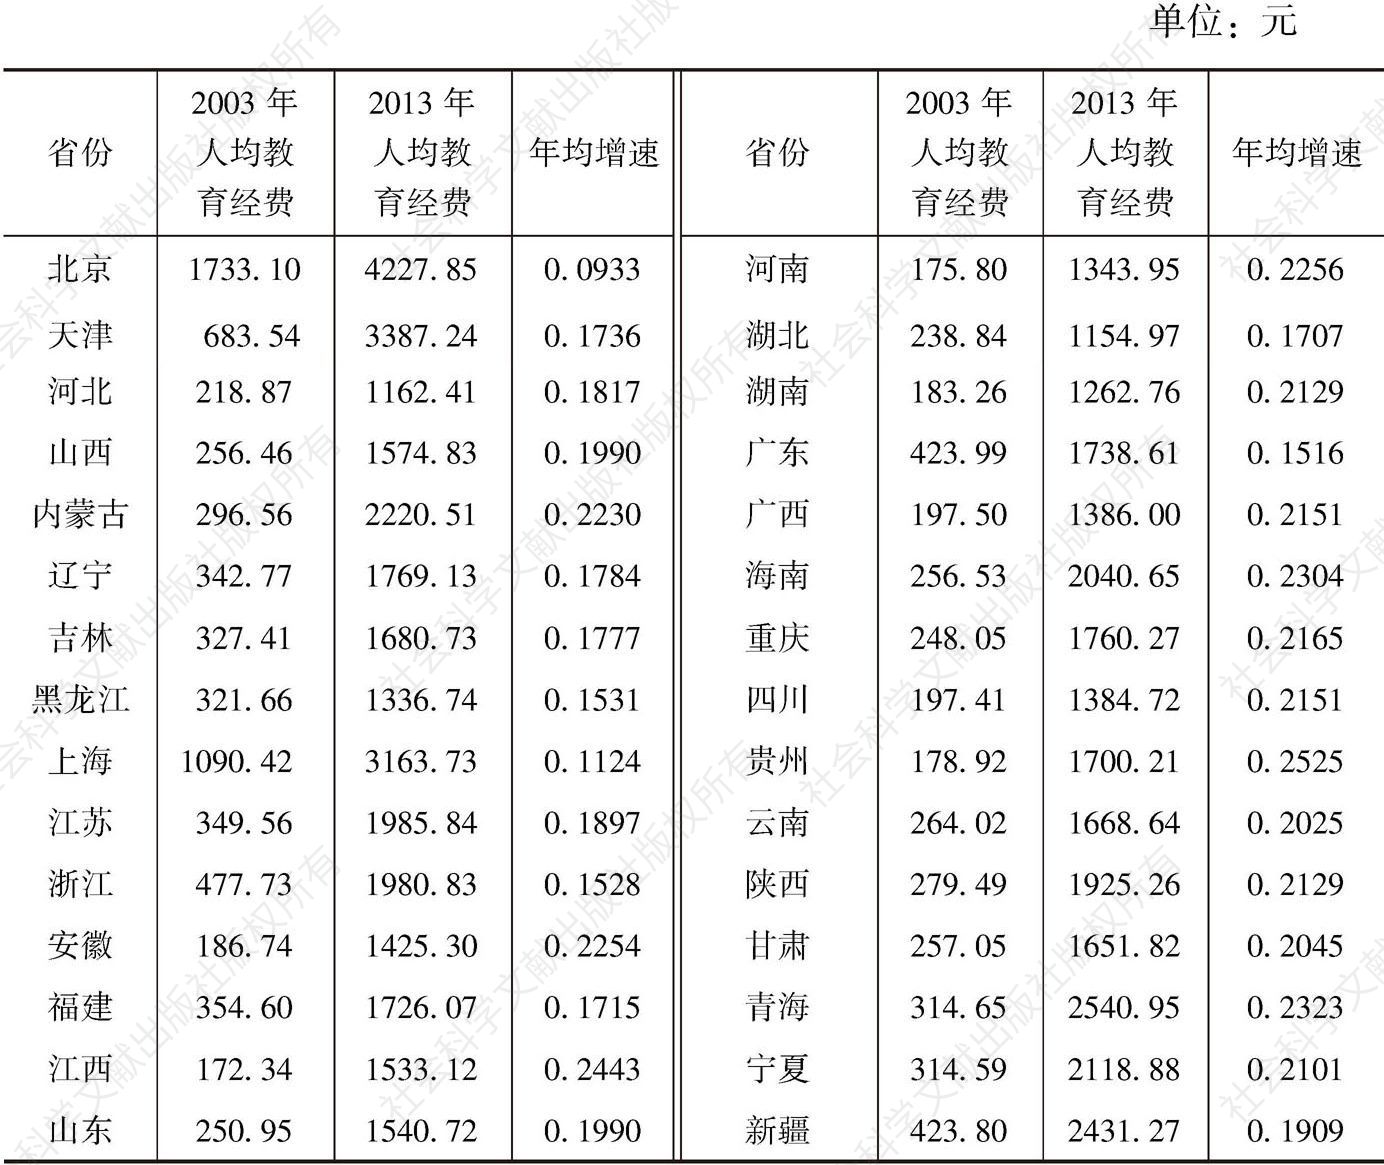 表11-6 2003、2013年中国各省份人均教育经费及其变化情况